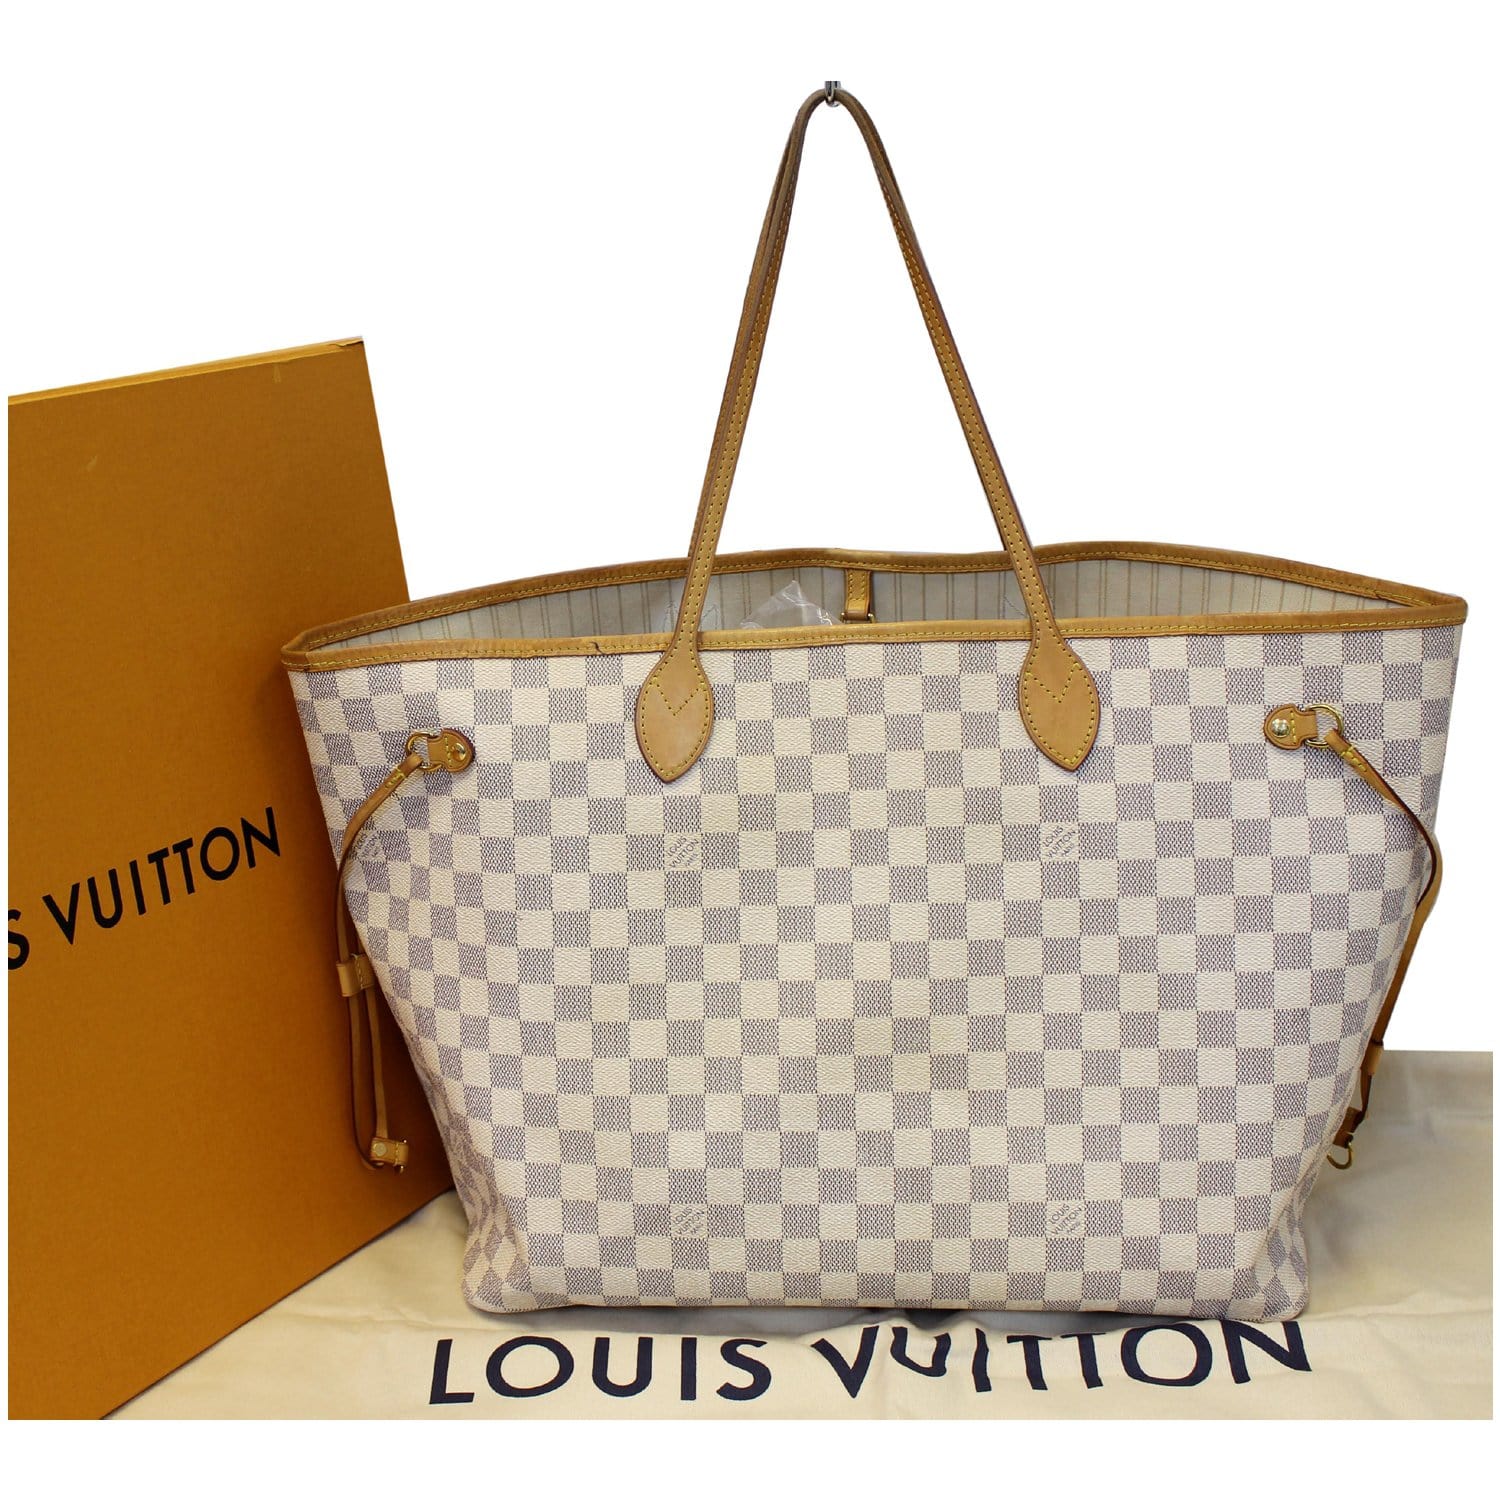 Authentic Louis Vuitton Damier Azur Neverfull Gm